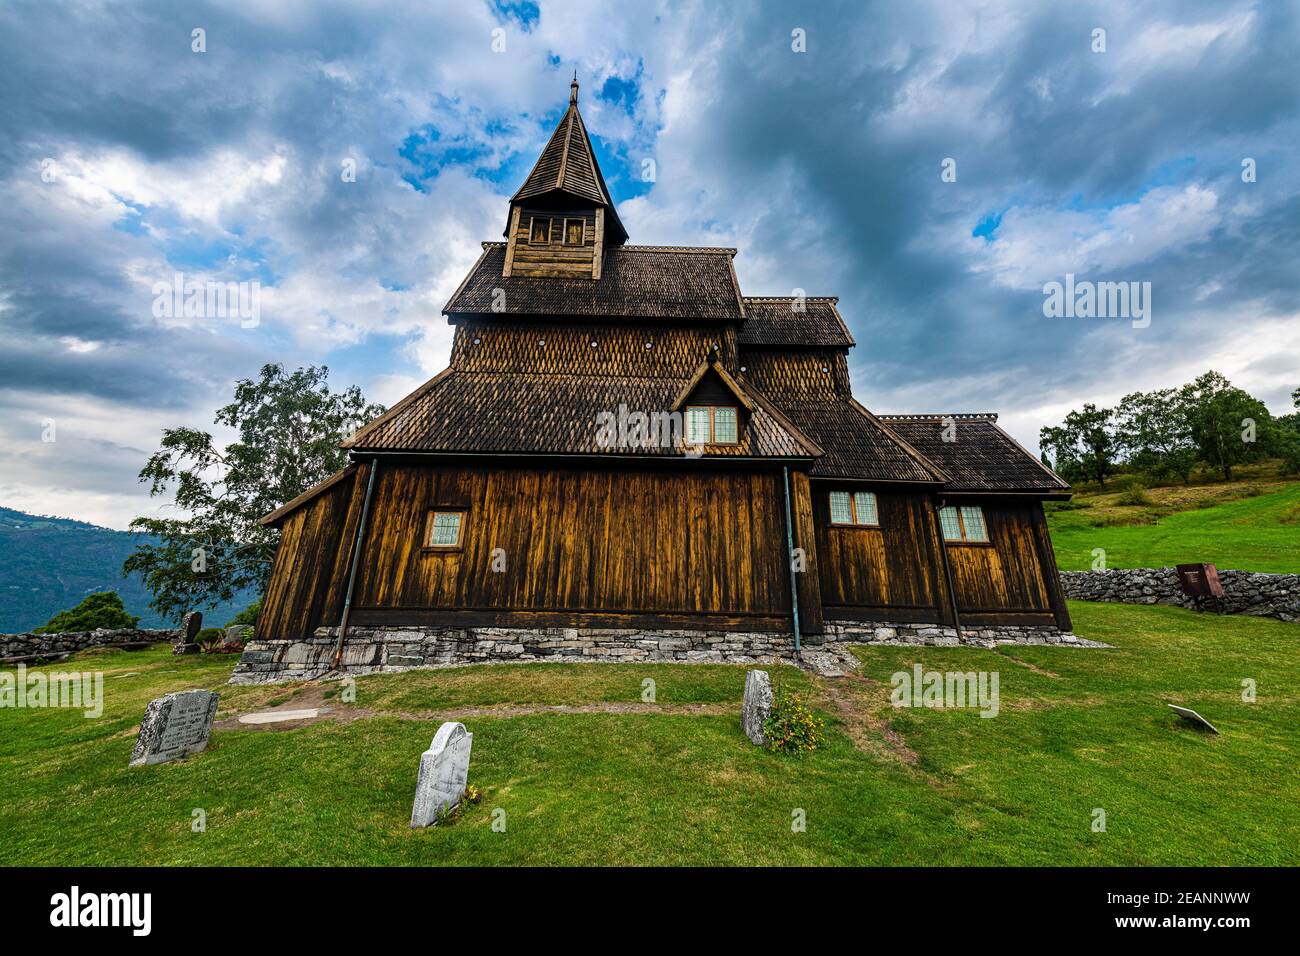 Eglise Urnes Stave, site classé au patrimoine mondial de l'UNESCO, Lustafjorden, Norvège, Scandinavie, Europe Banque D'Images